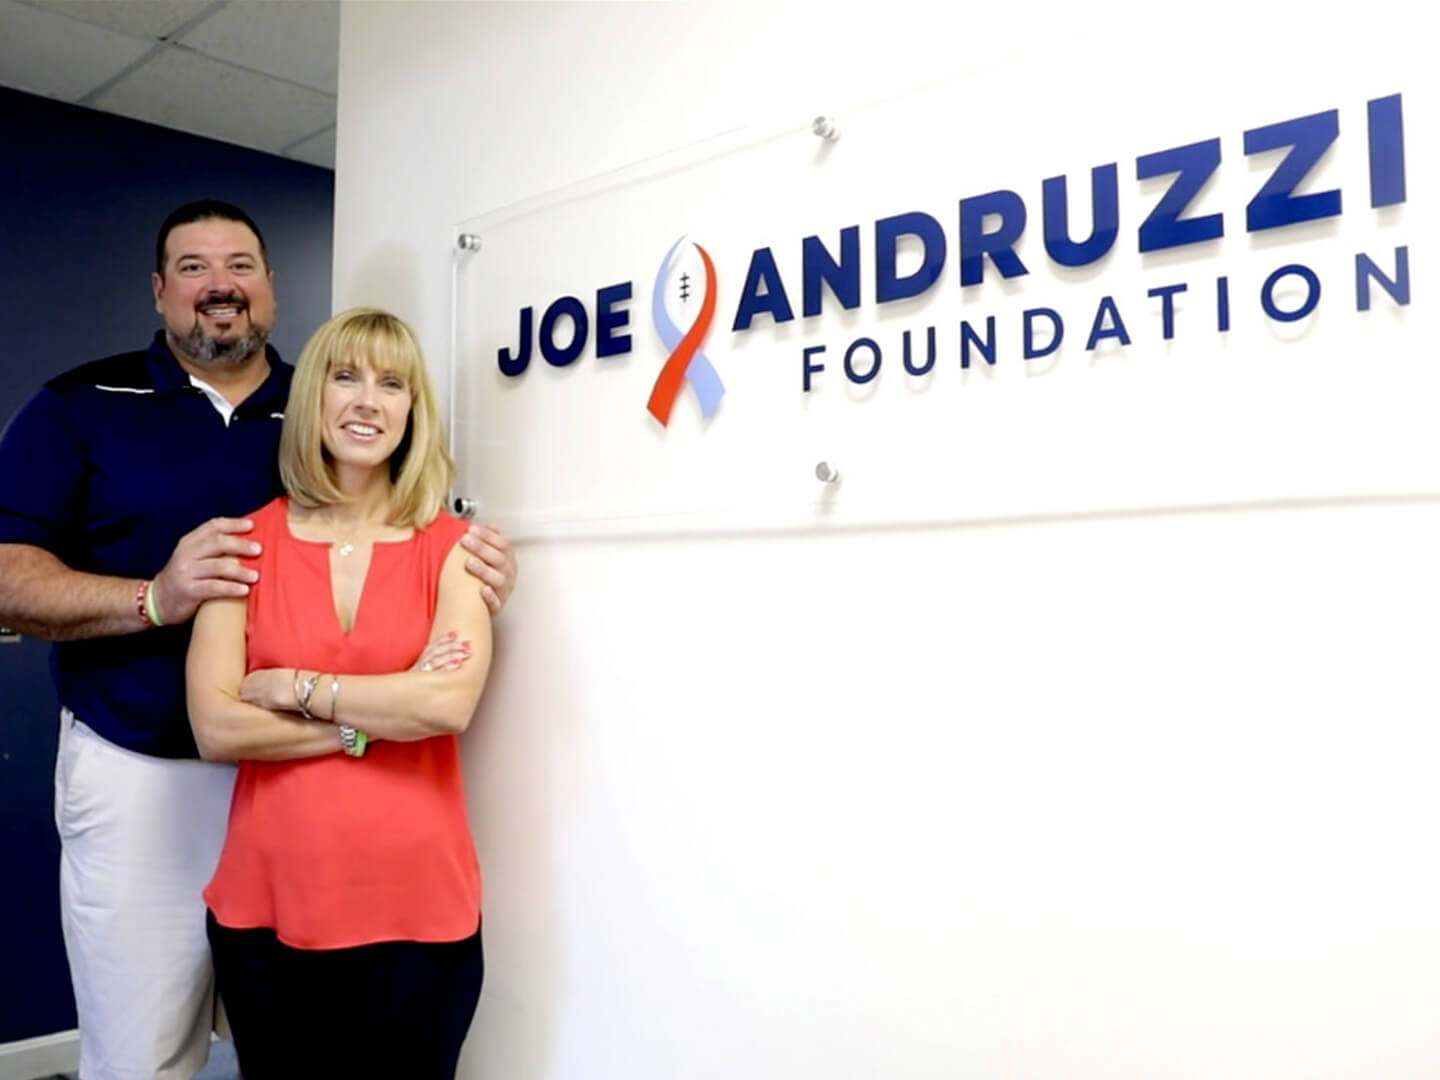 Joe Andruzzi Foundation